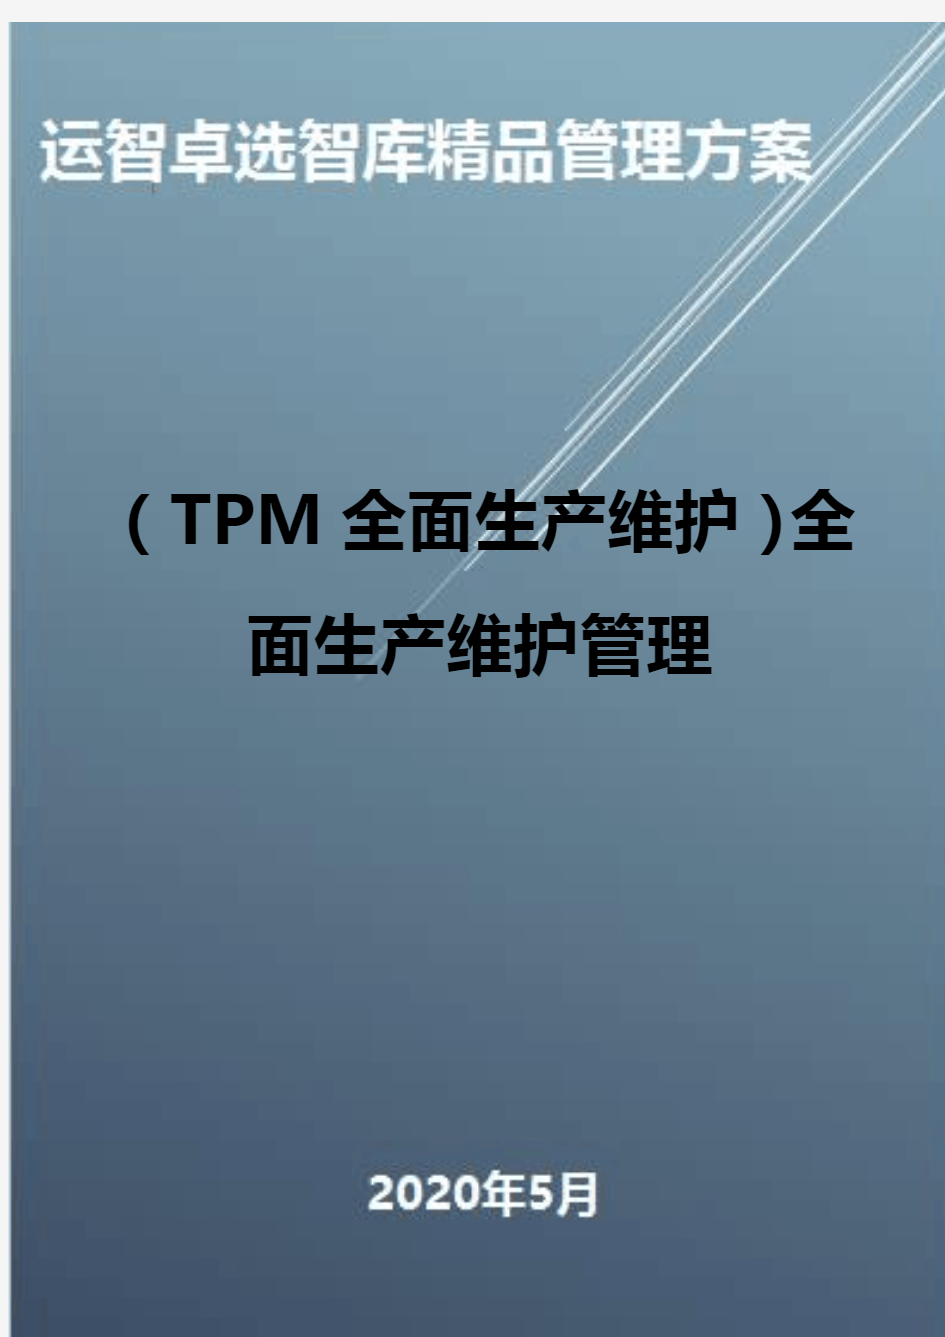 (TPM全面生产维护)全面生产维护管理